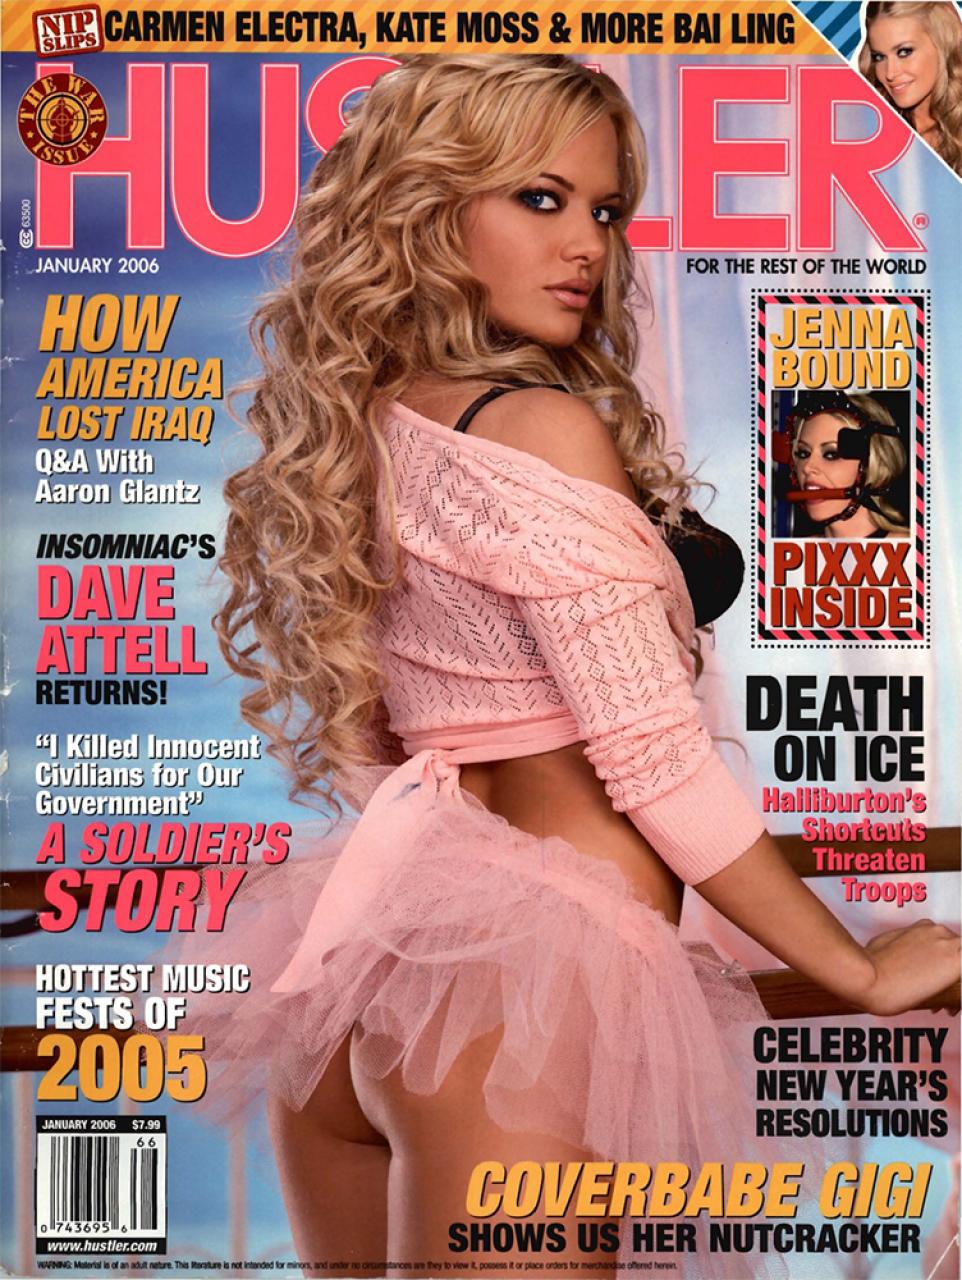 January 2006 - HUSTLER Magazine.